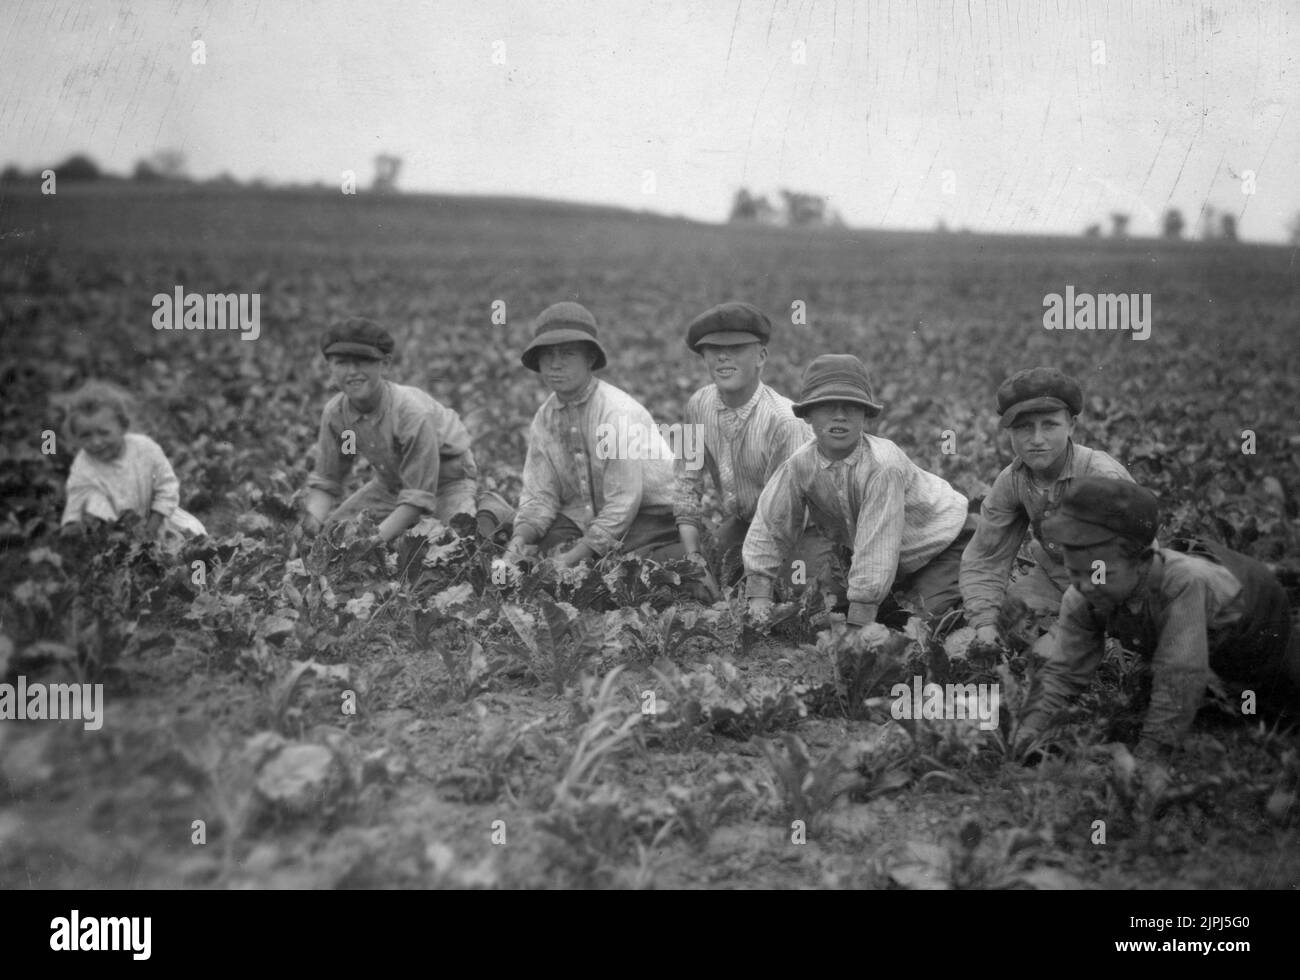 Niños que trabajan en las remolachas de azúcar para Louis Startz, un agricultor cerca de Fond du Lac, Wisconsin. Los niños son sacados de la ciudad cercana para trabajar las remolachas. Véase Hine Report, Wisconsin Sugar Beet, julio de 1915. Por Lewis Wickes Hine Foto de stock